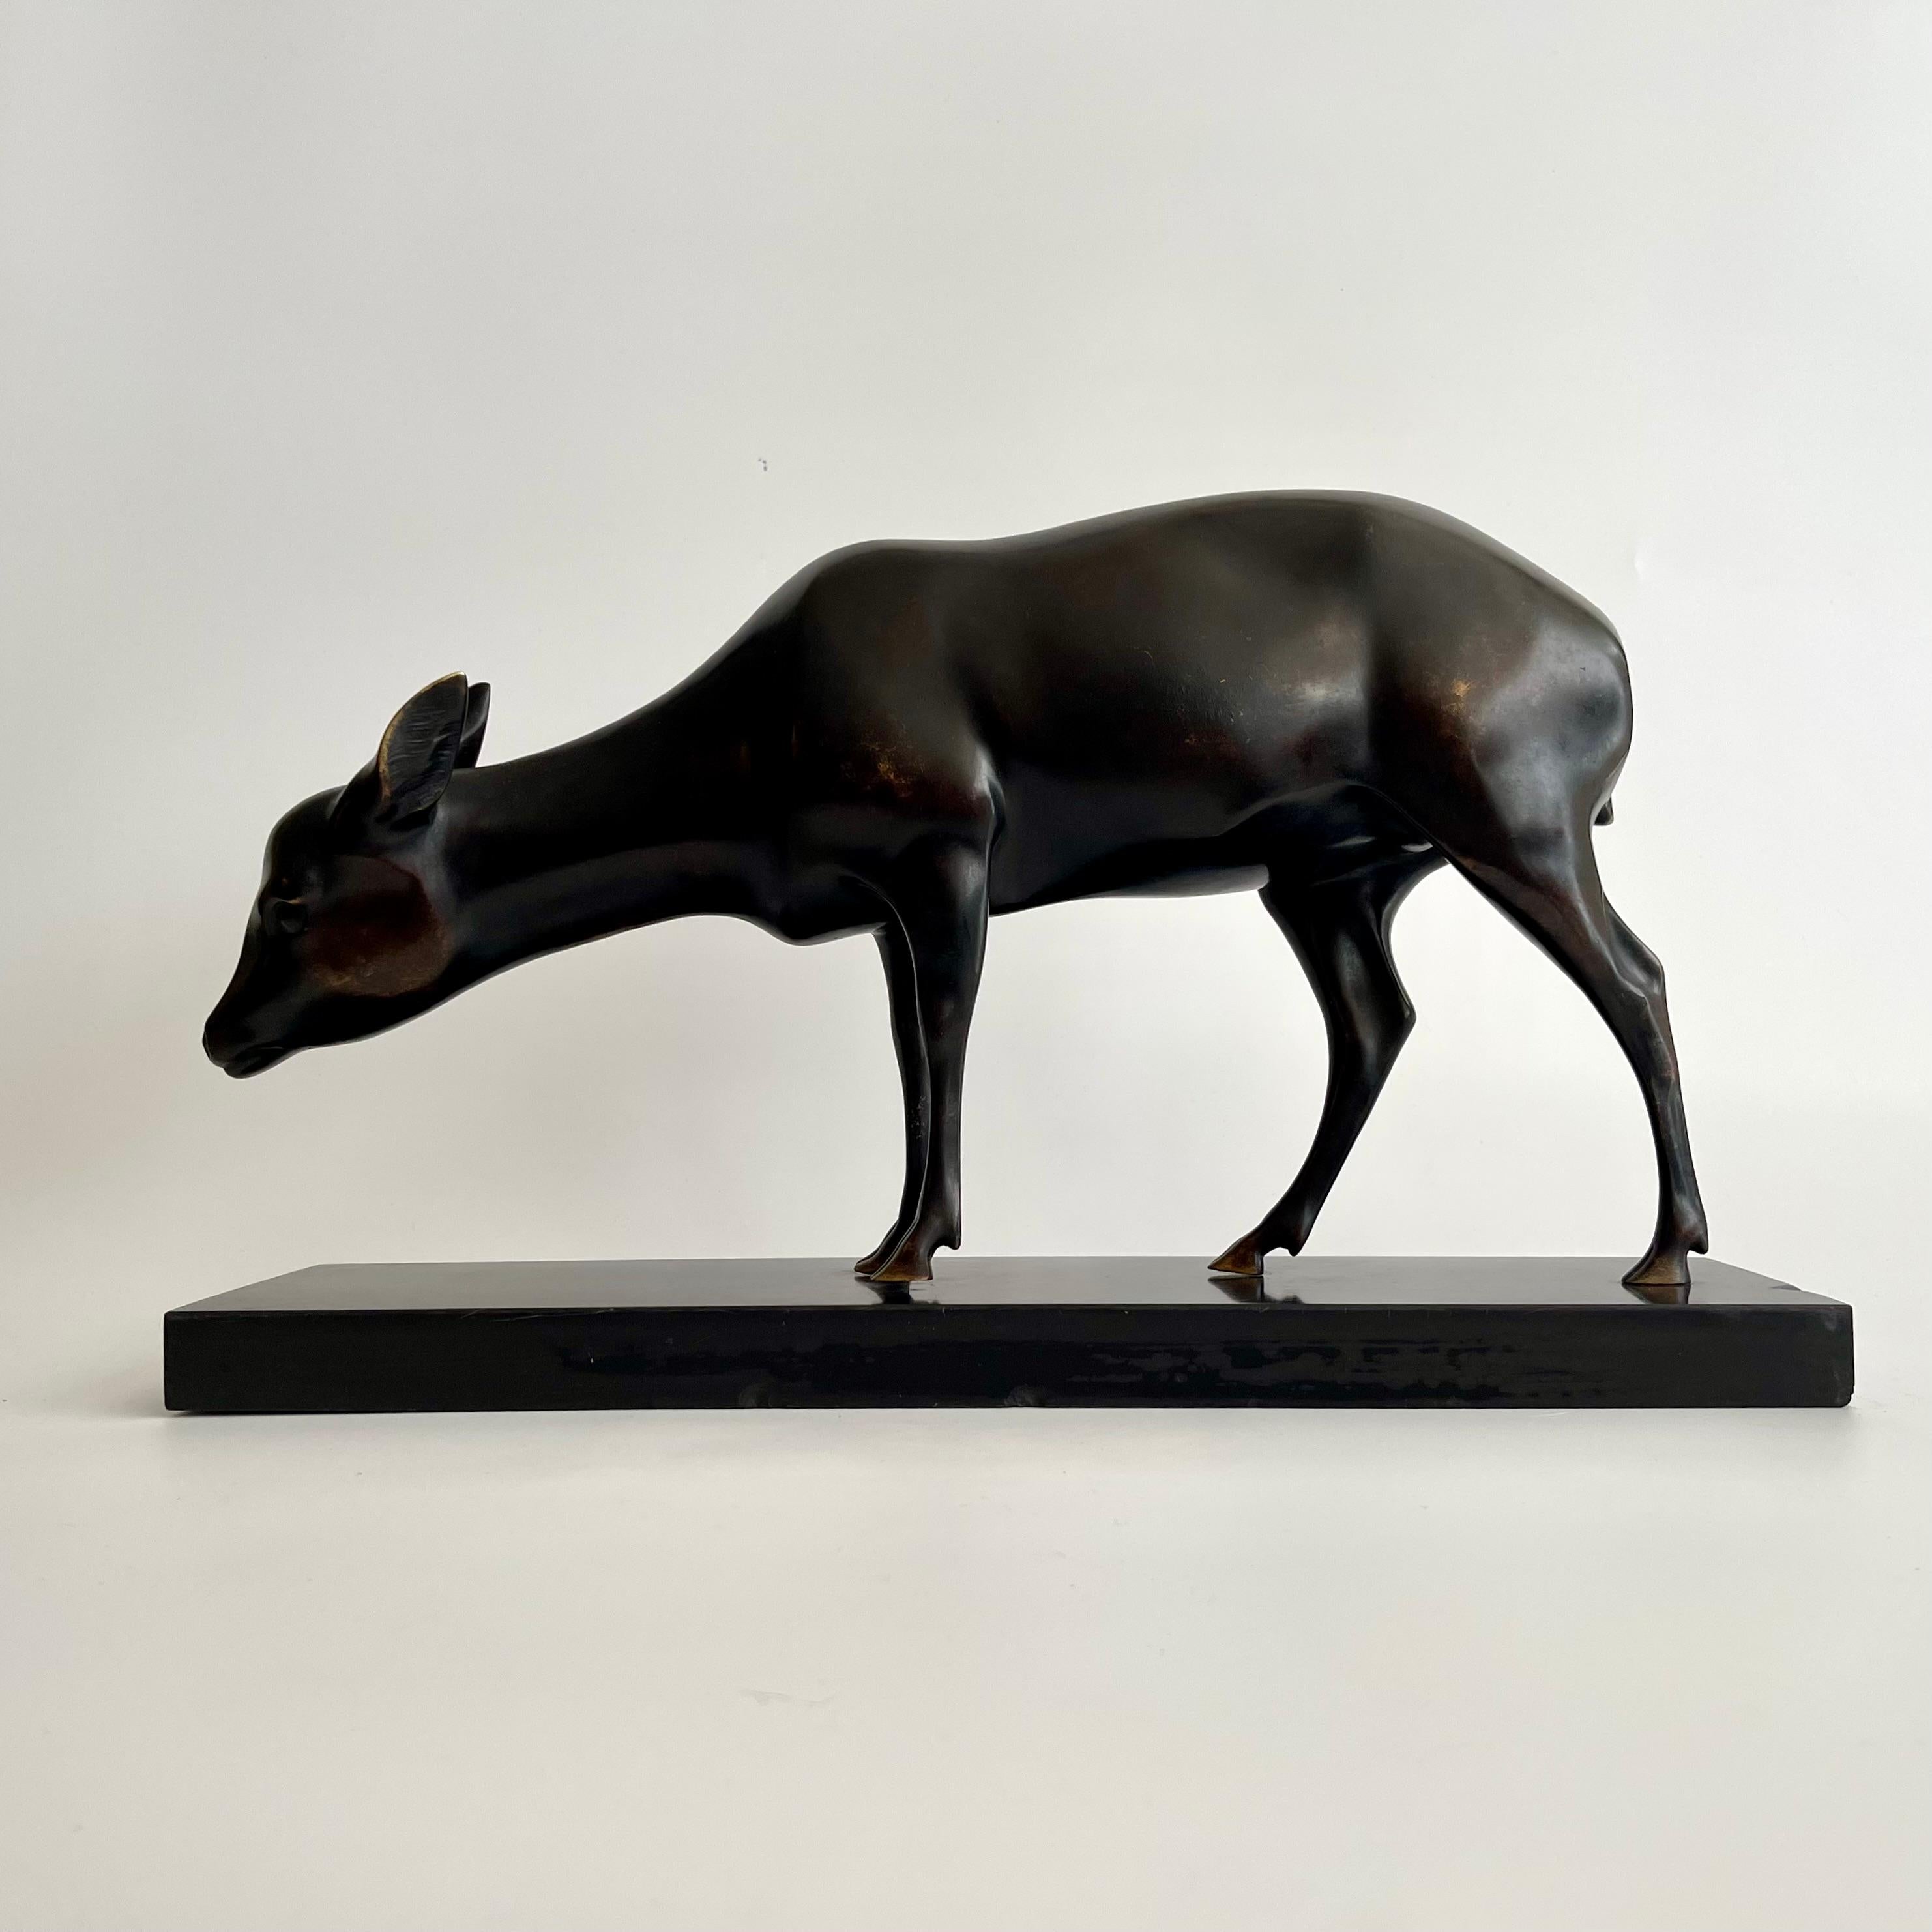 Eine schöne Bronzeskulptur eines grasenden Hirsches, signiert vom Künstler Armand Sinko.
Abmessungen: Sockel 50 cm breit, 13 cm tief
Skulptur: 47cm Breite, 26cm Höhe, 9cm Tiefe